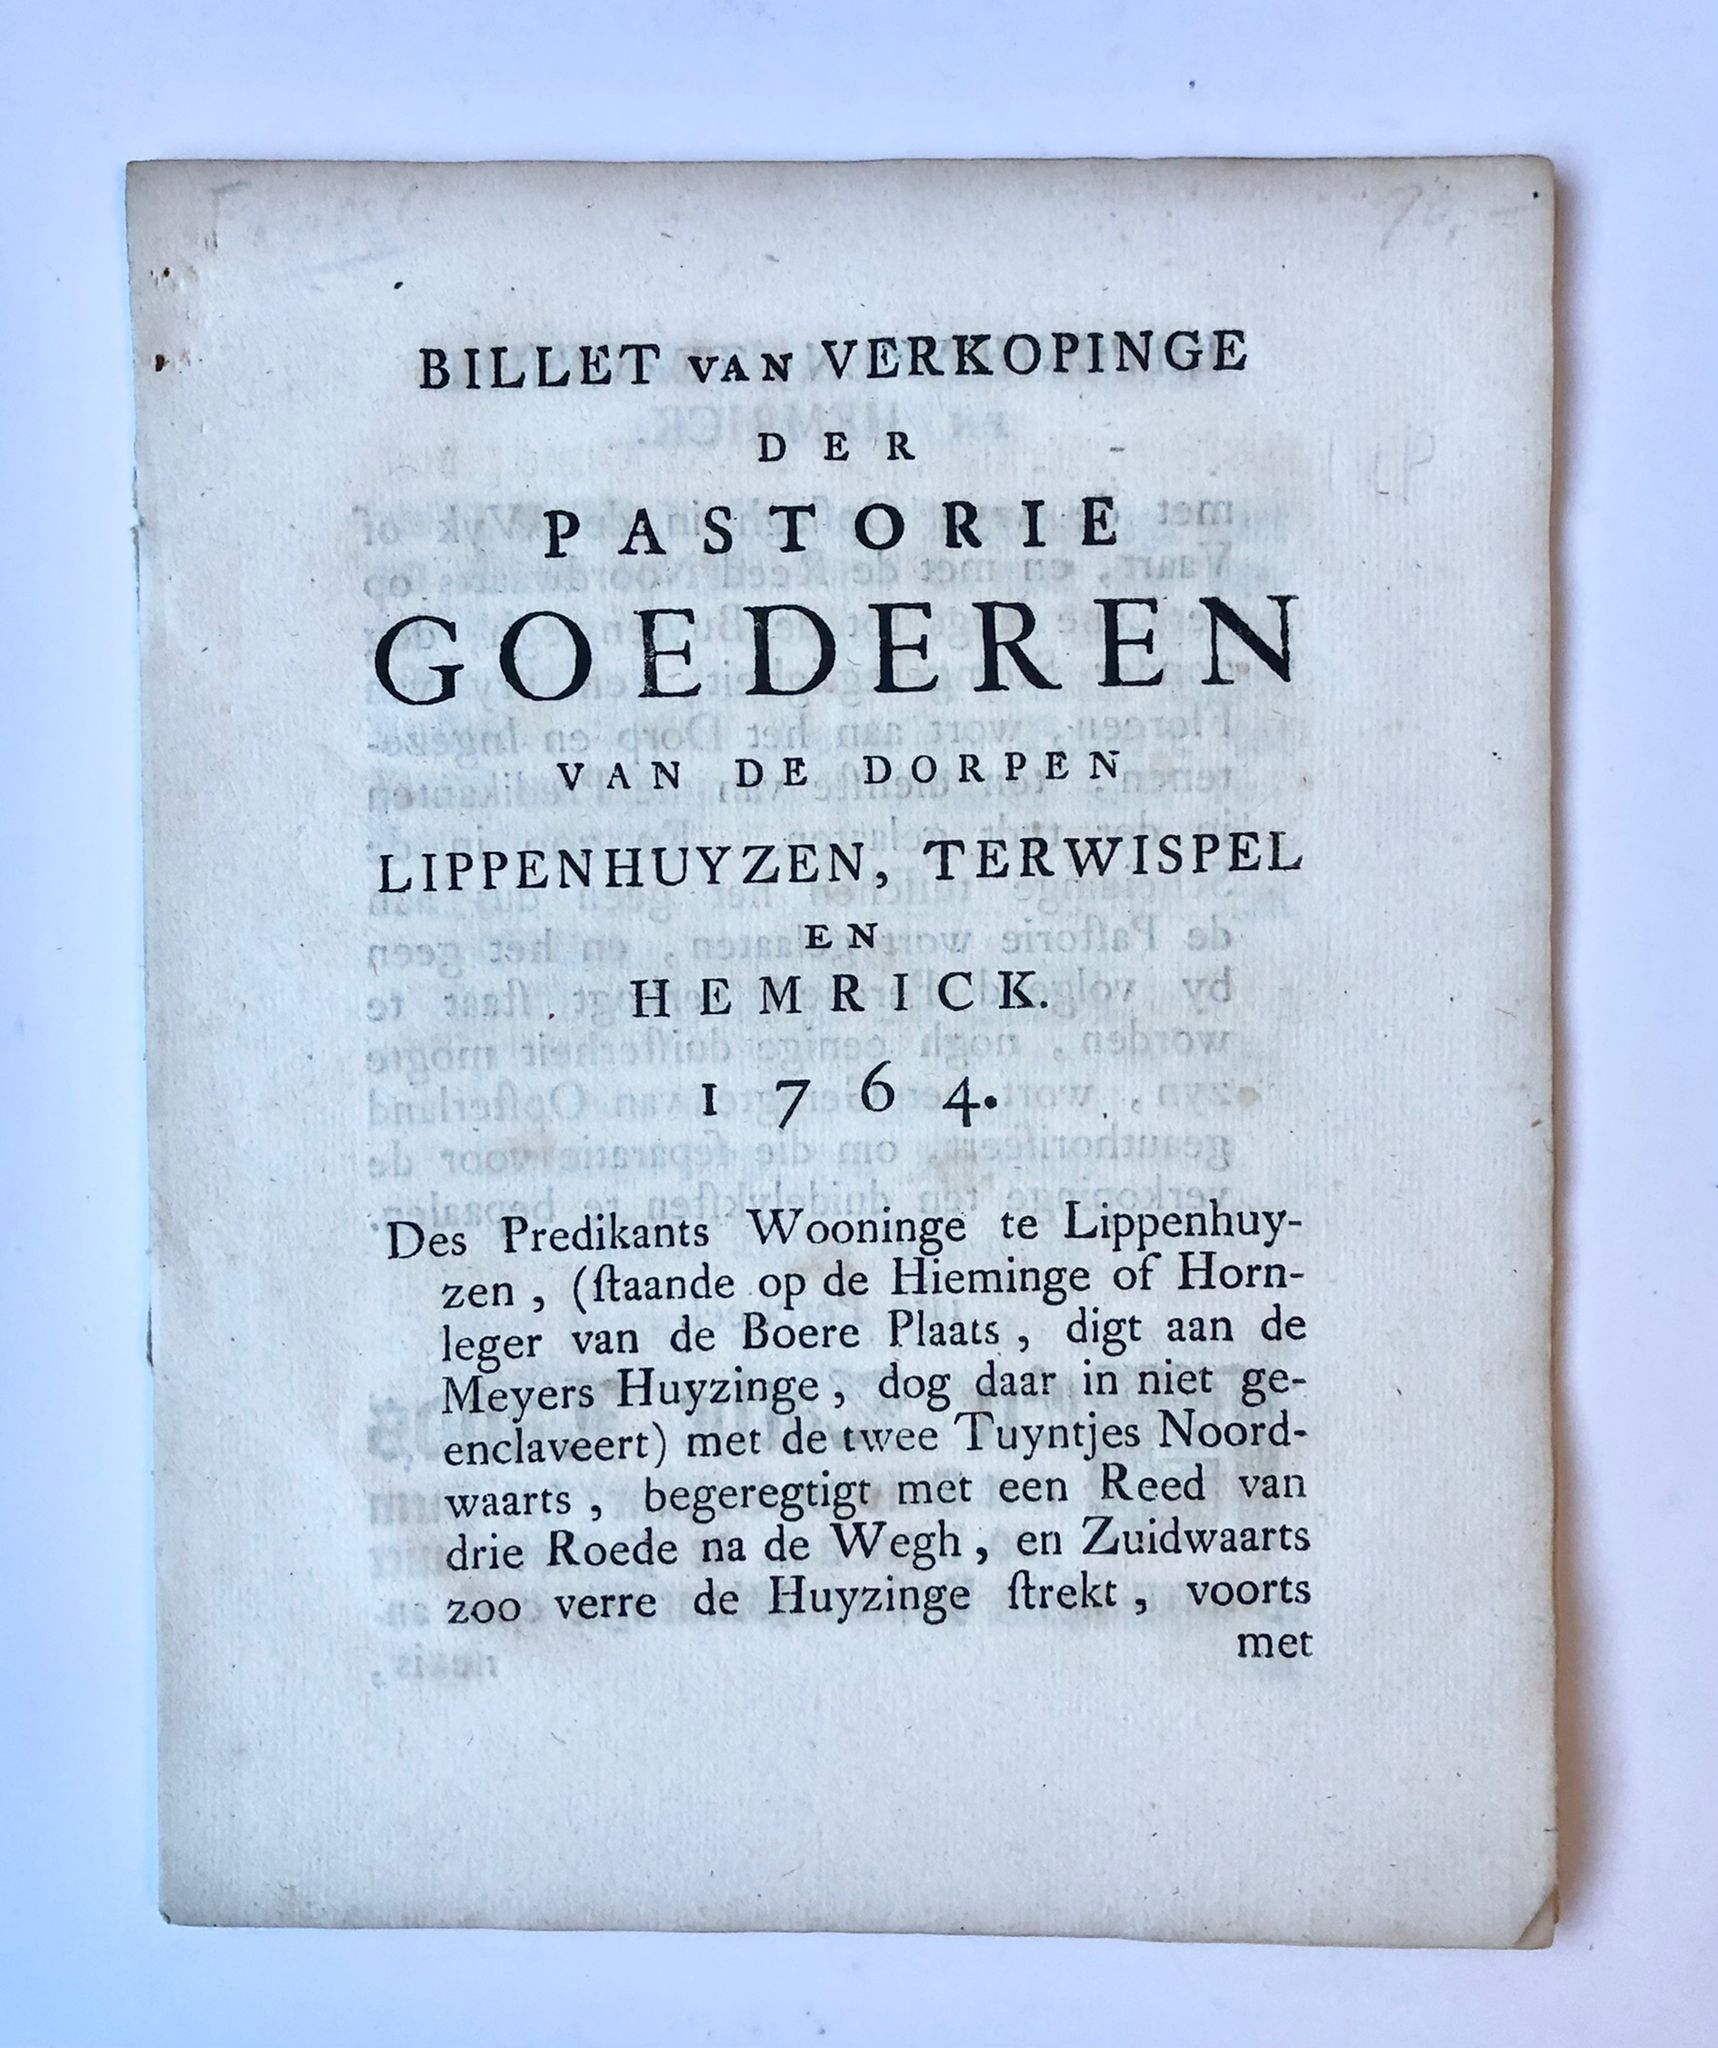 [Friesland, 1764] Billet van verkopinge der pastorie Goederen van de dorpen Lippenhuyzen, Terwispel en Hemrick. 1764, Friesland, 14 pp.